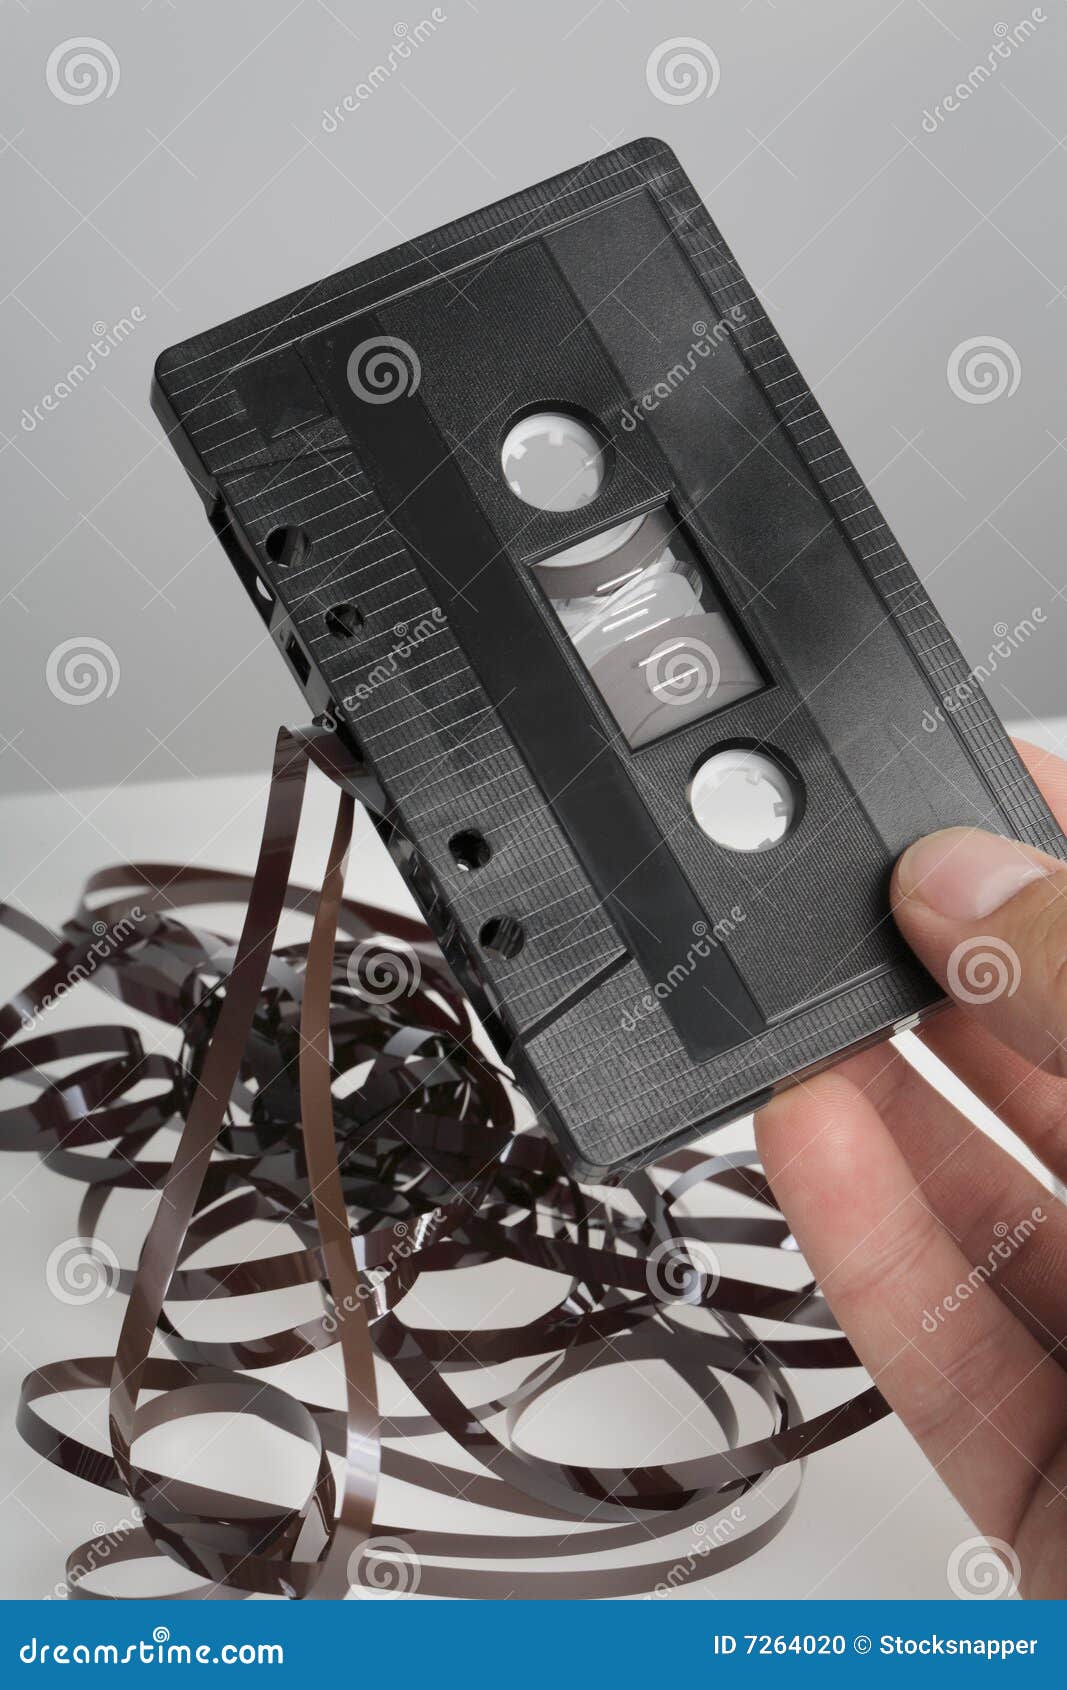 Altes Audio. Hand, die eine alte Audioc$c-kassette anhält